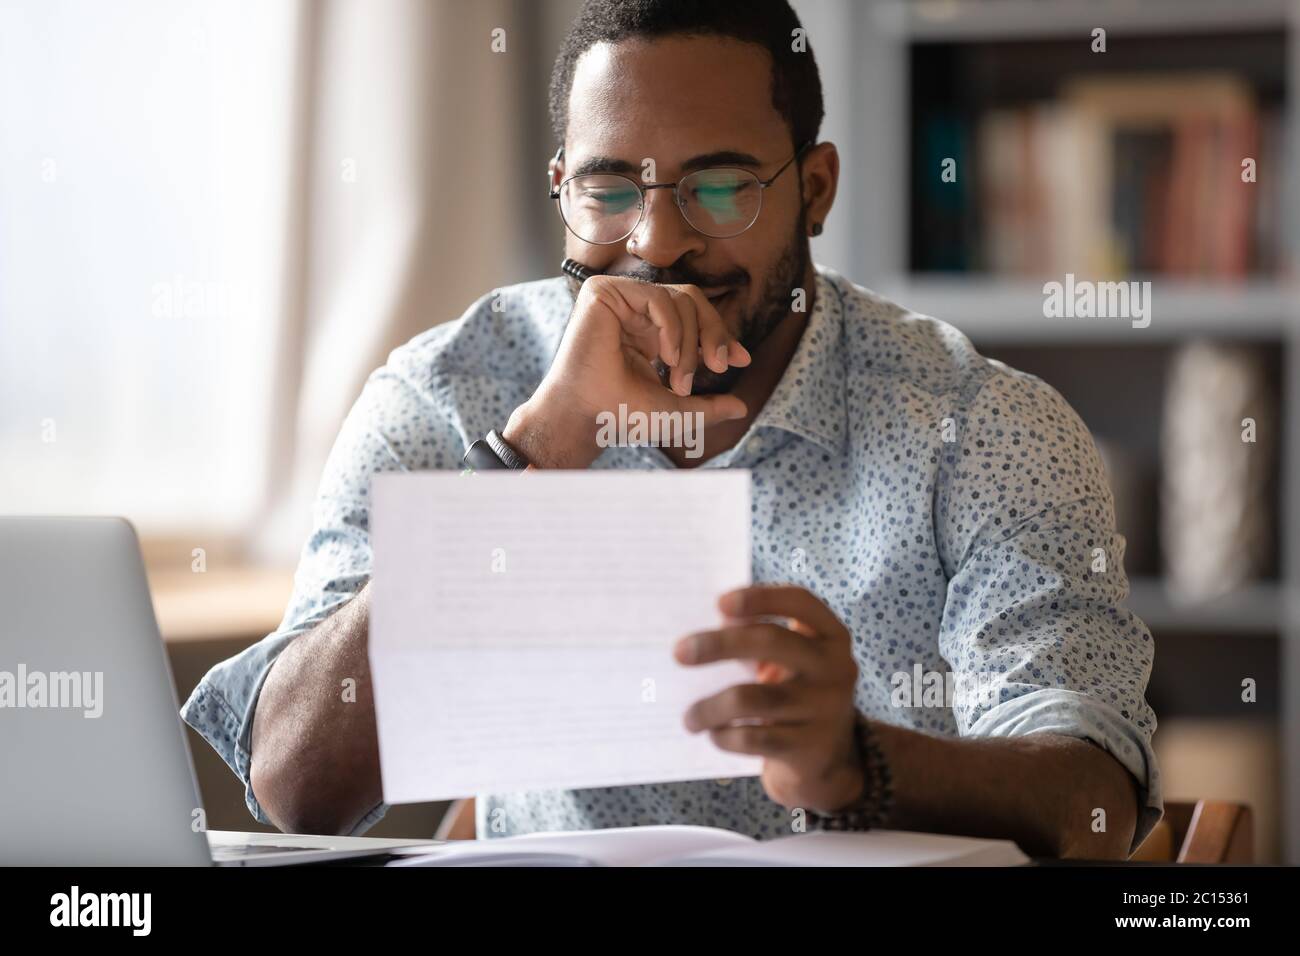 Der Afrikaner, der am Empfang sitzt und den Brief liest, fühlt sich zufrieden Stockfoto